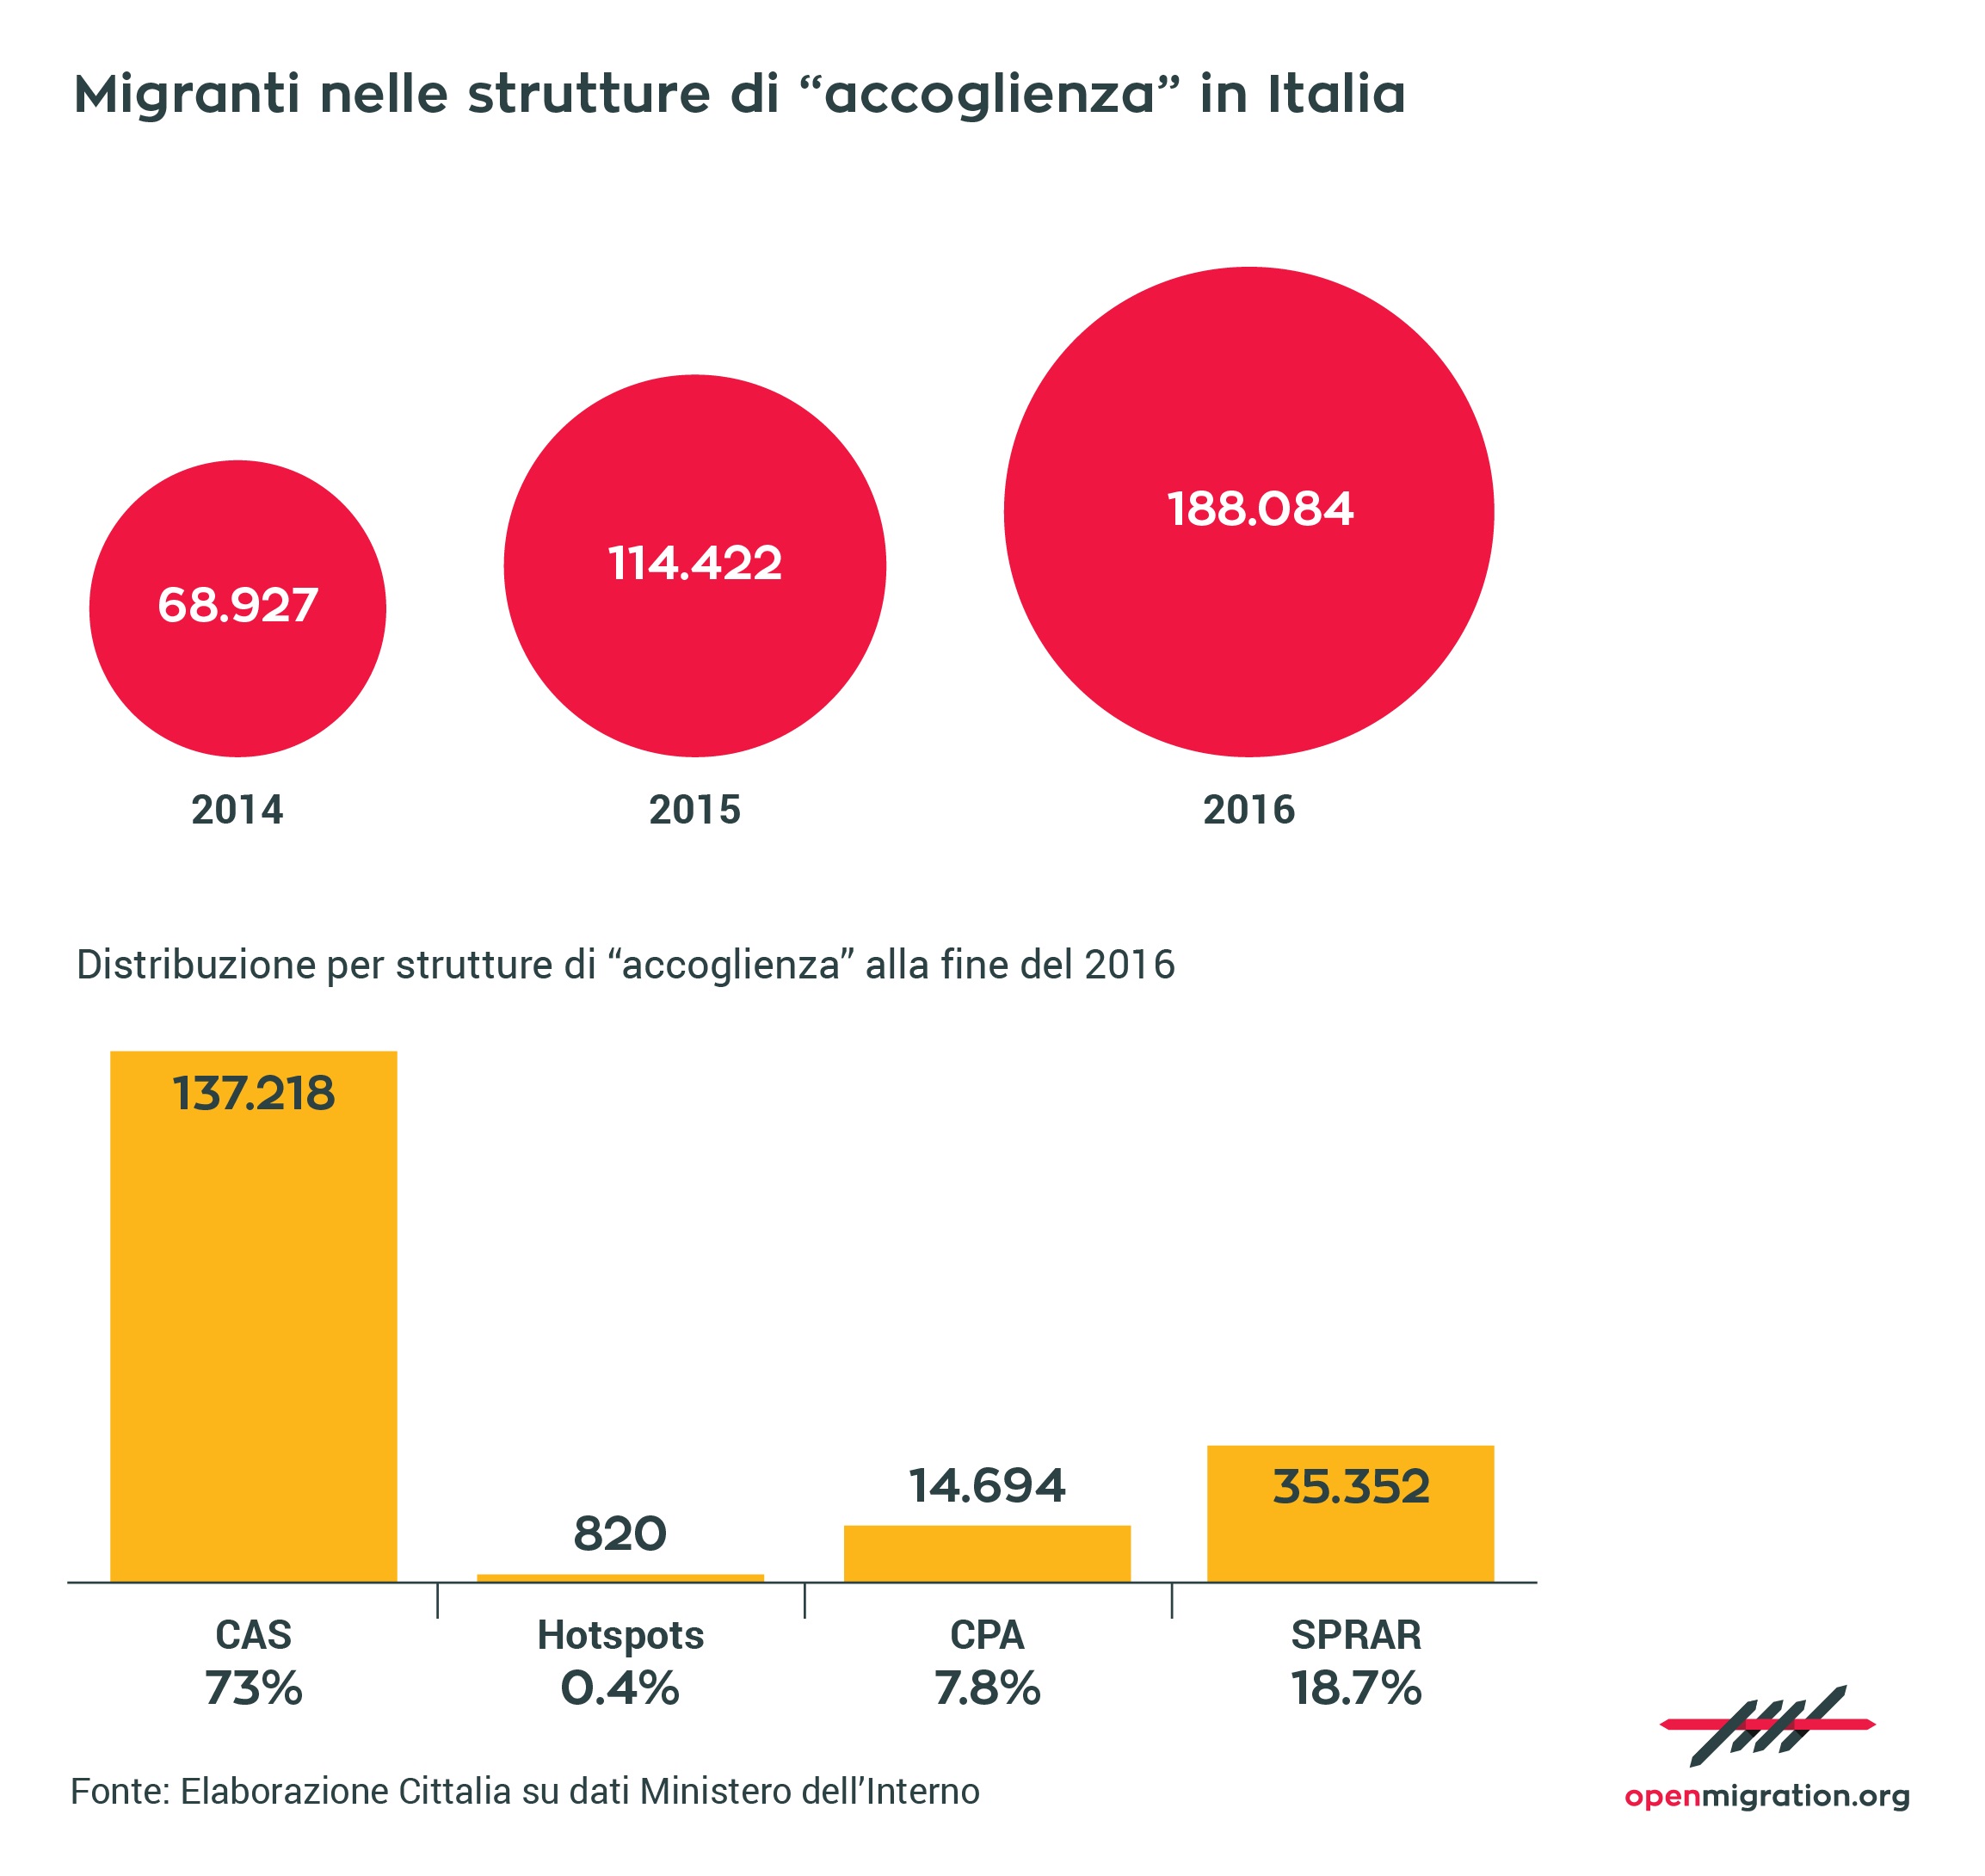 Migranti nelle strutture di “accoglienza” in Italia, 2016